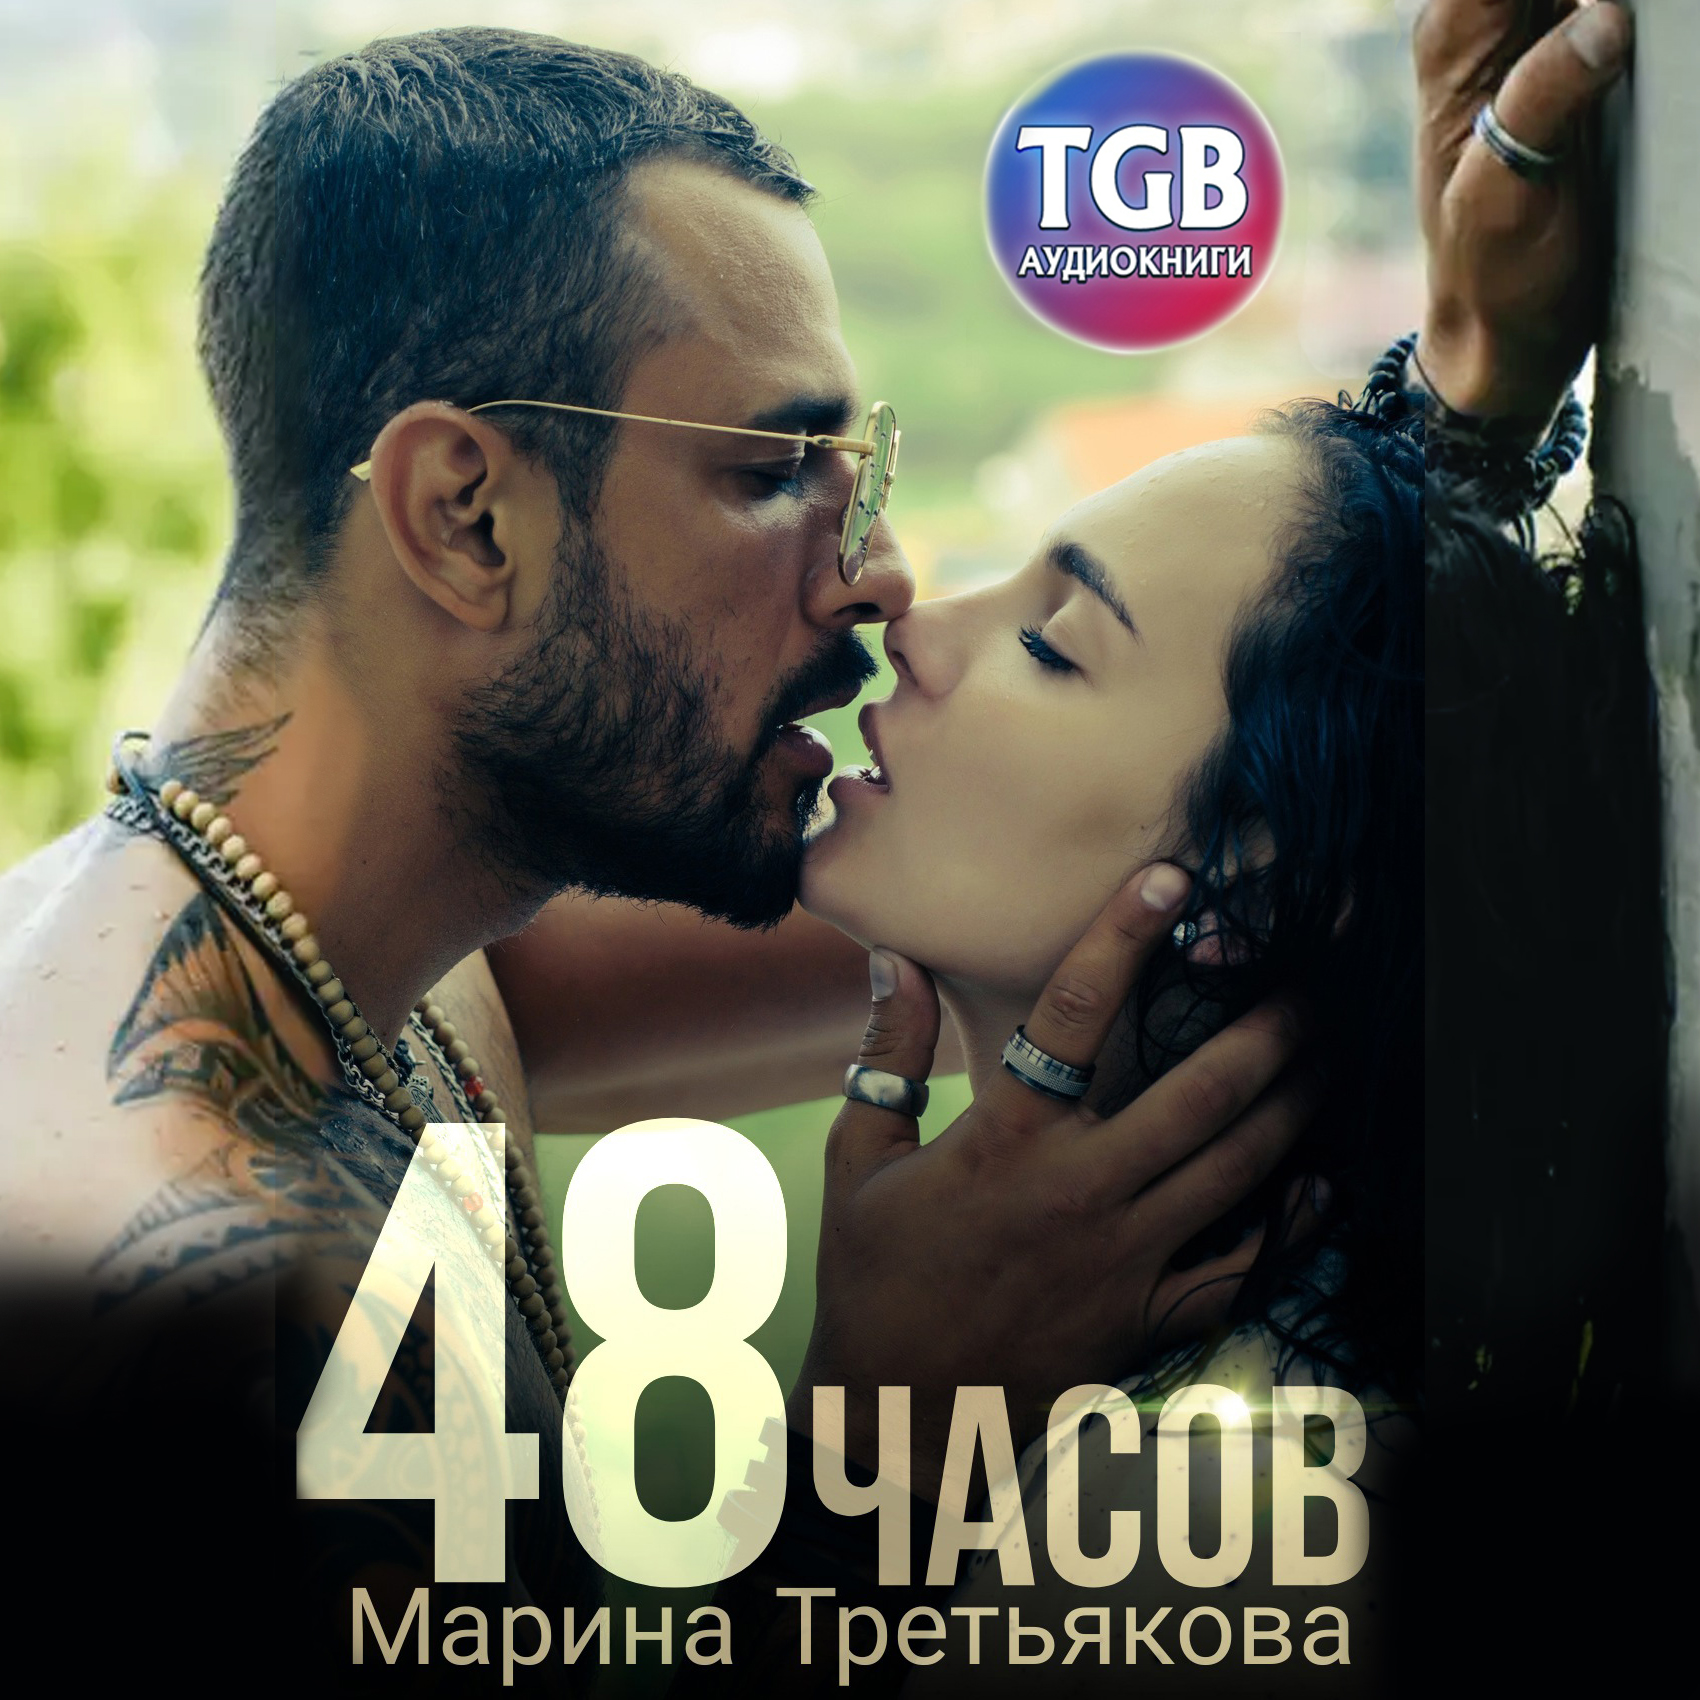 «Люблю яркость»: Алёна Водонаева показала эротические снимки со звездой «Дома-2»